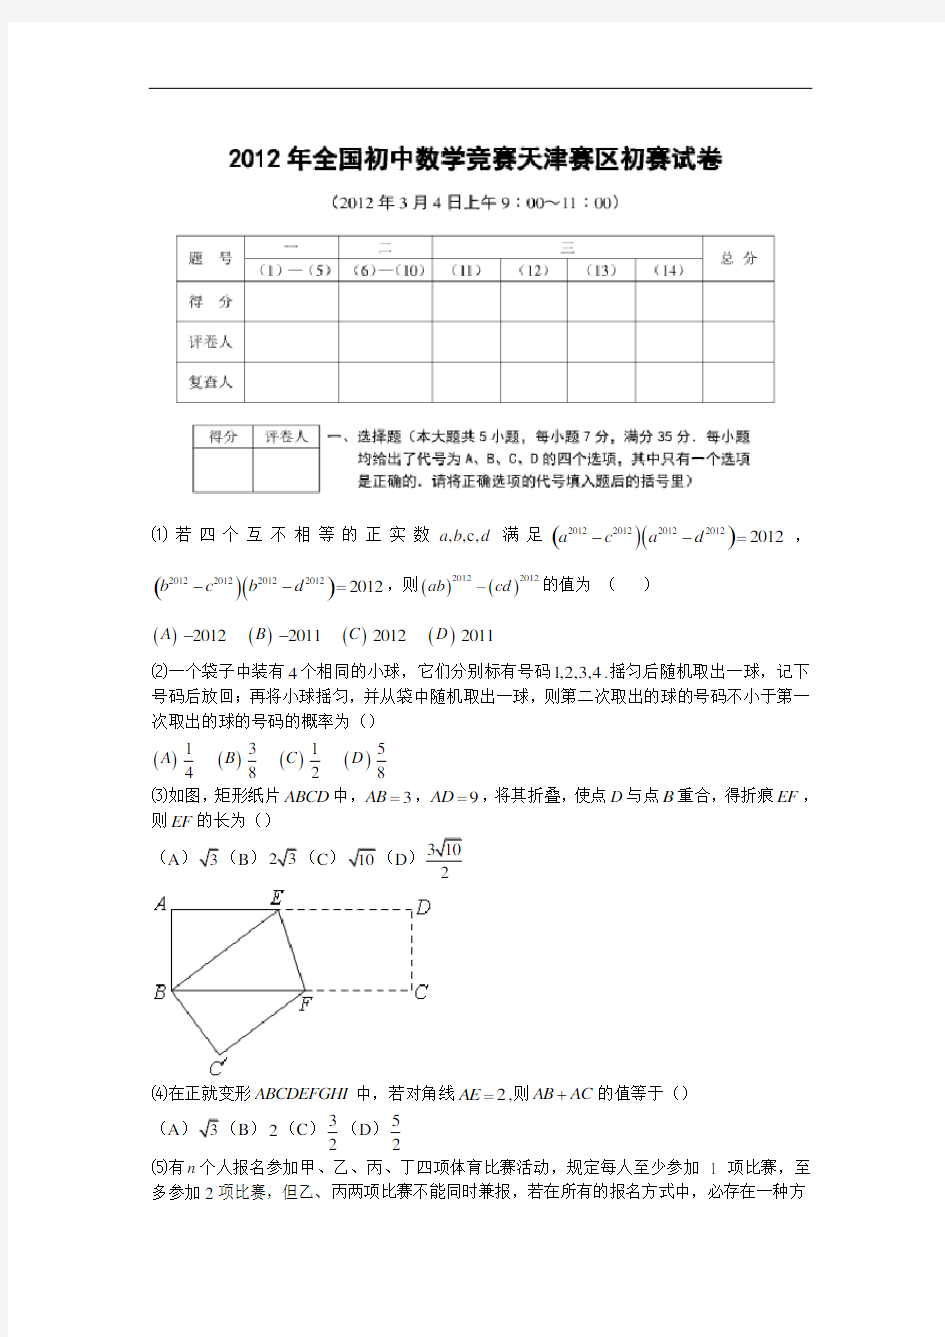 2012年全国初中数学竞赛天津赛区初赛试题(含答案)[1]